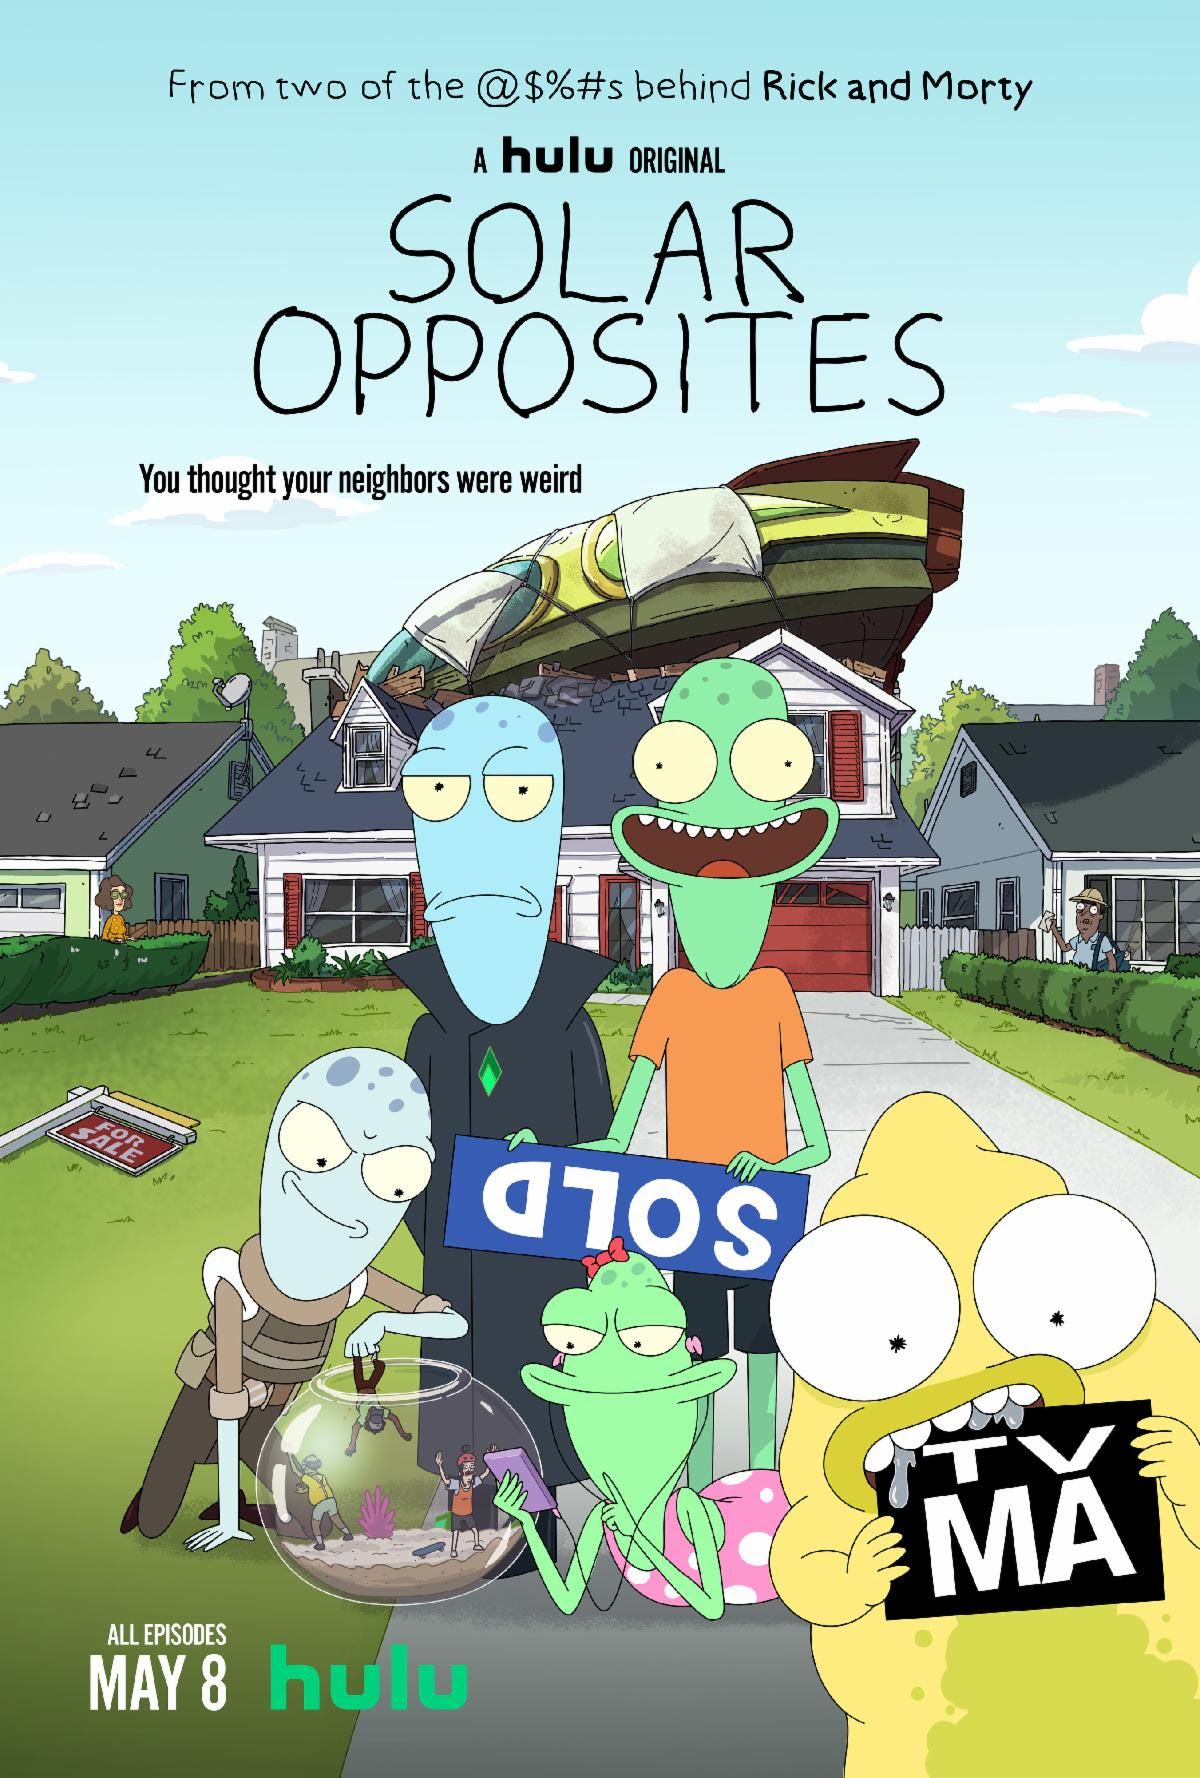 Solar Opposites bude ďalším animákom, na ktorom budeme závislí. Tvorca Ricka a Mortyho predstavuje šialený a vtipný seriál